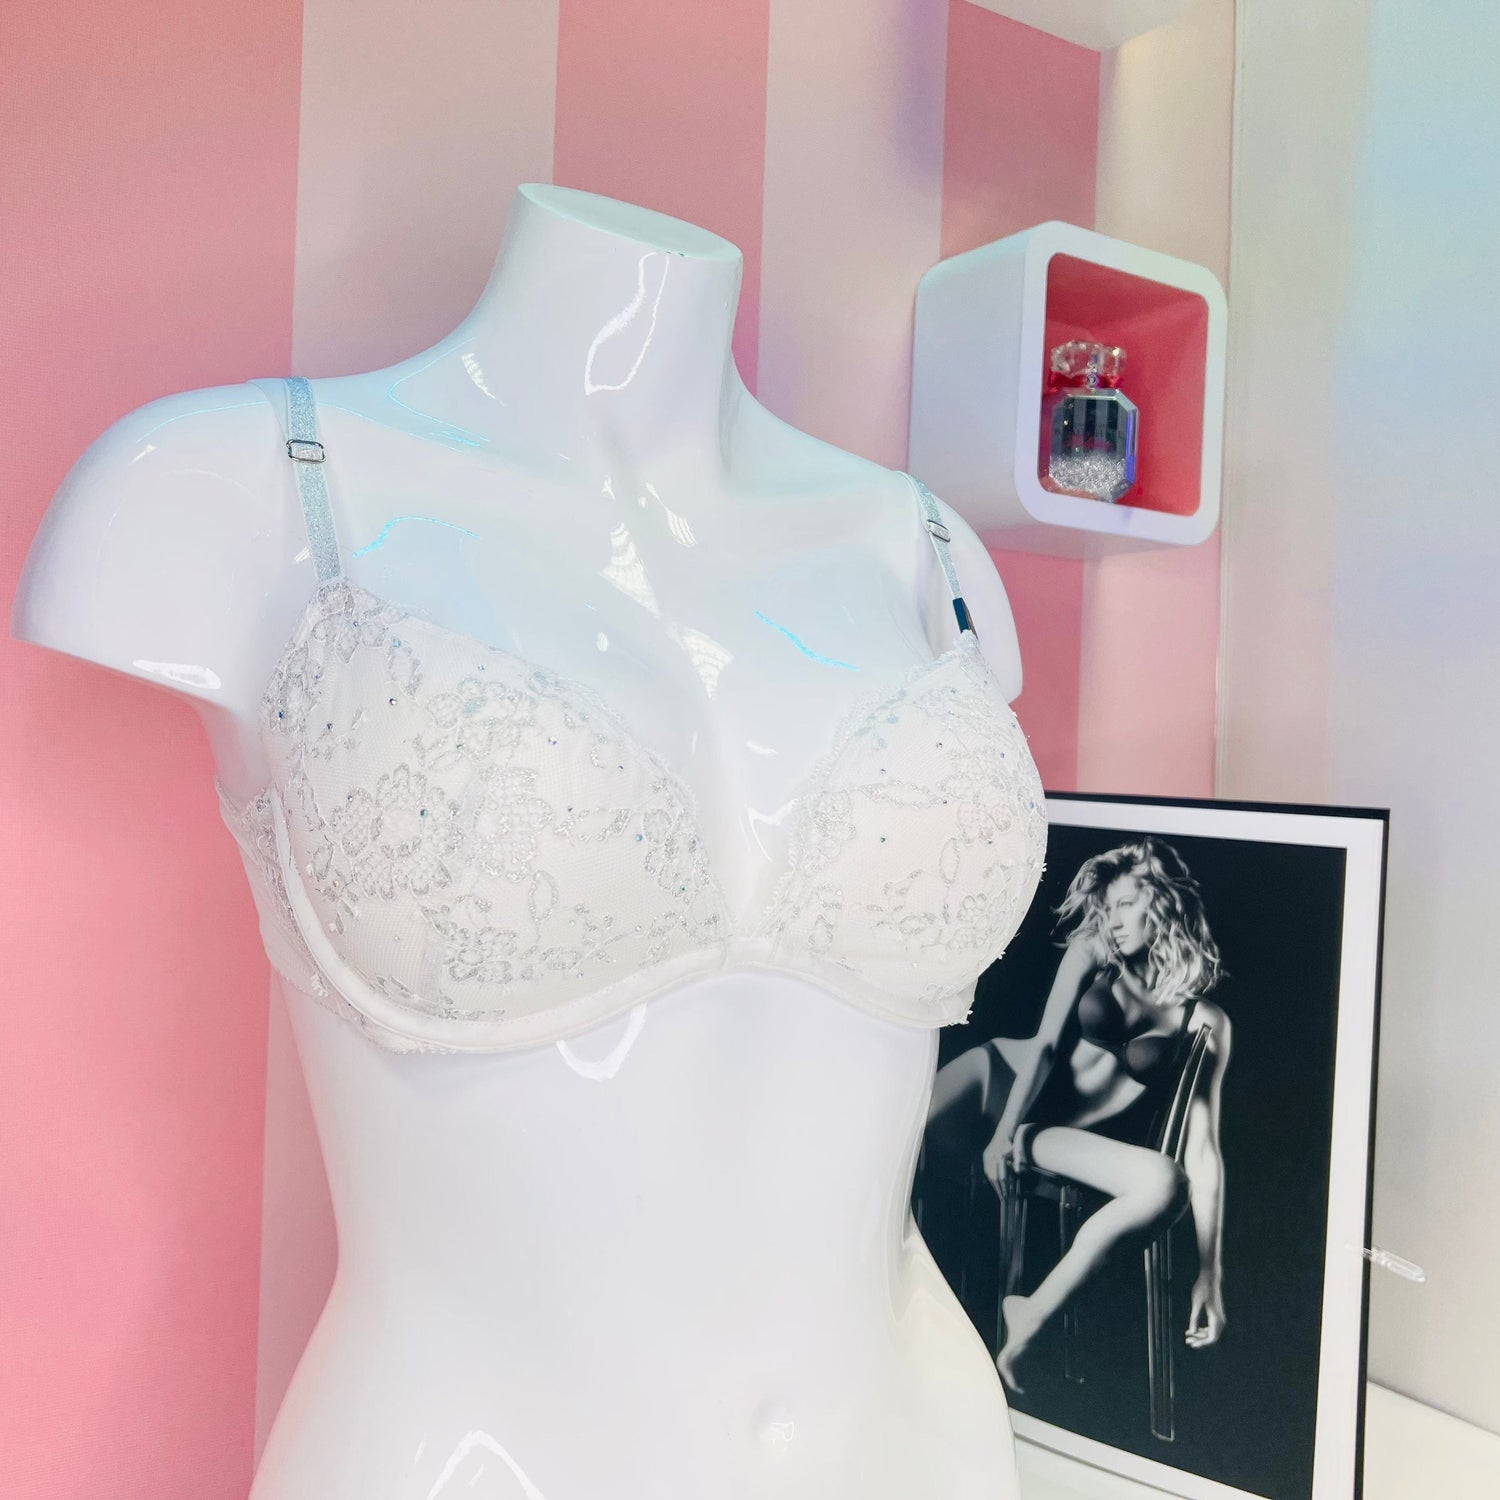 Podprsenka z Fashion show 2015 NYC - 36B / Bílá / Nové se štítky - Podprsenky Victoria’s Secret